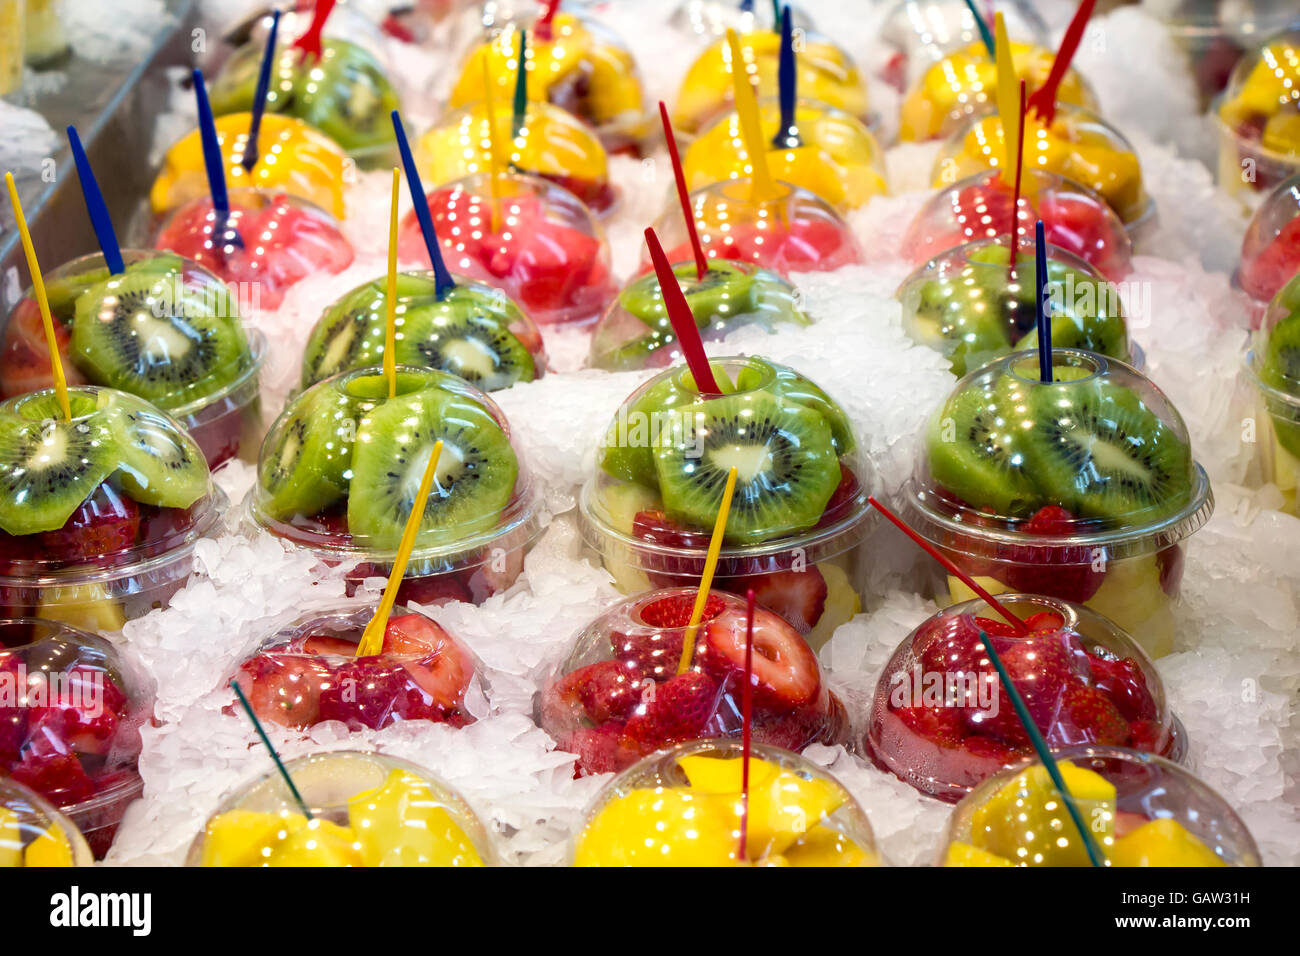 Cocktail de fruits frais salade dans des gobelets en plastique sur un étal du marché Banque D'Images